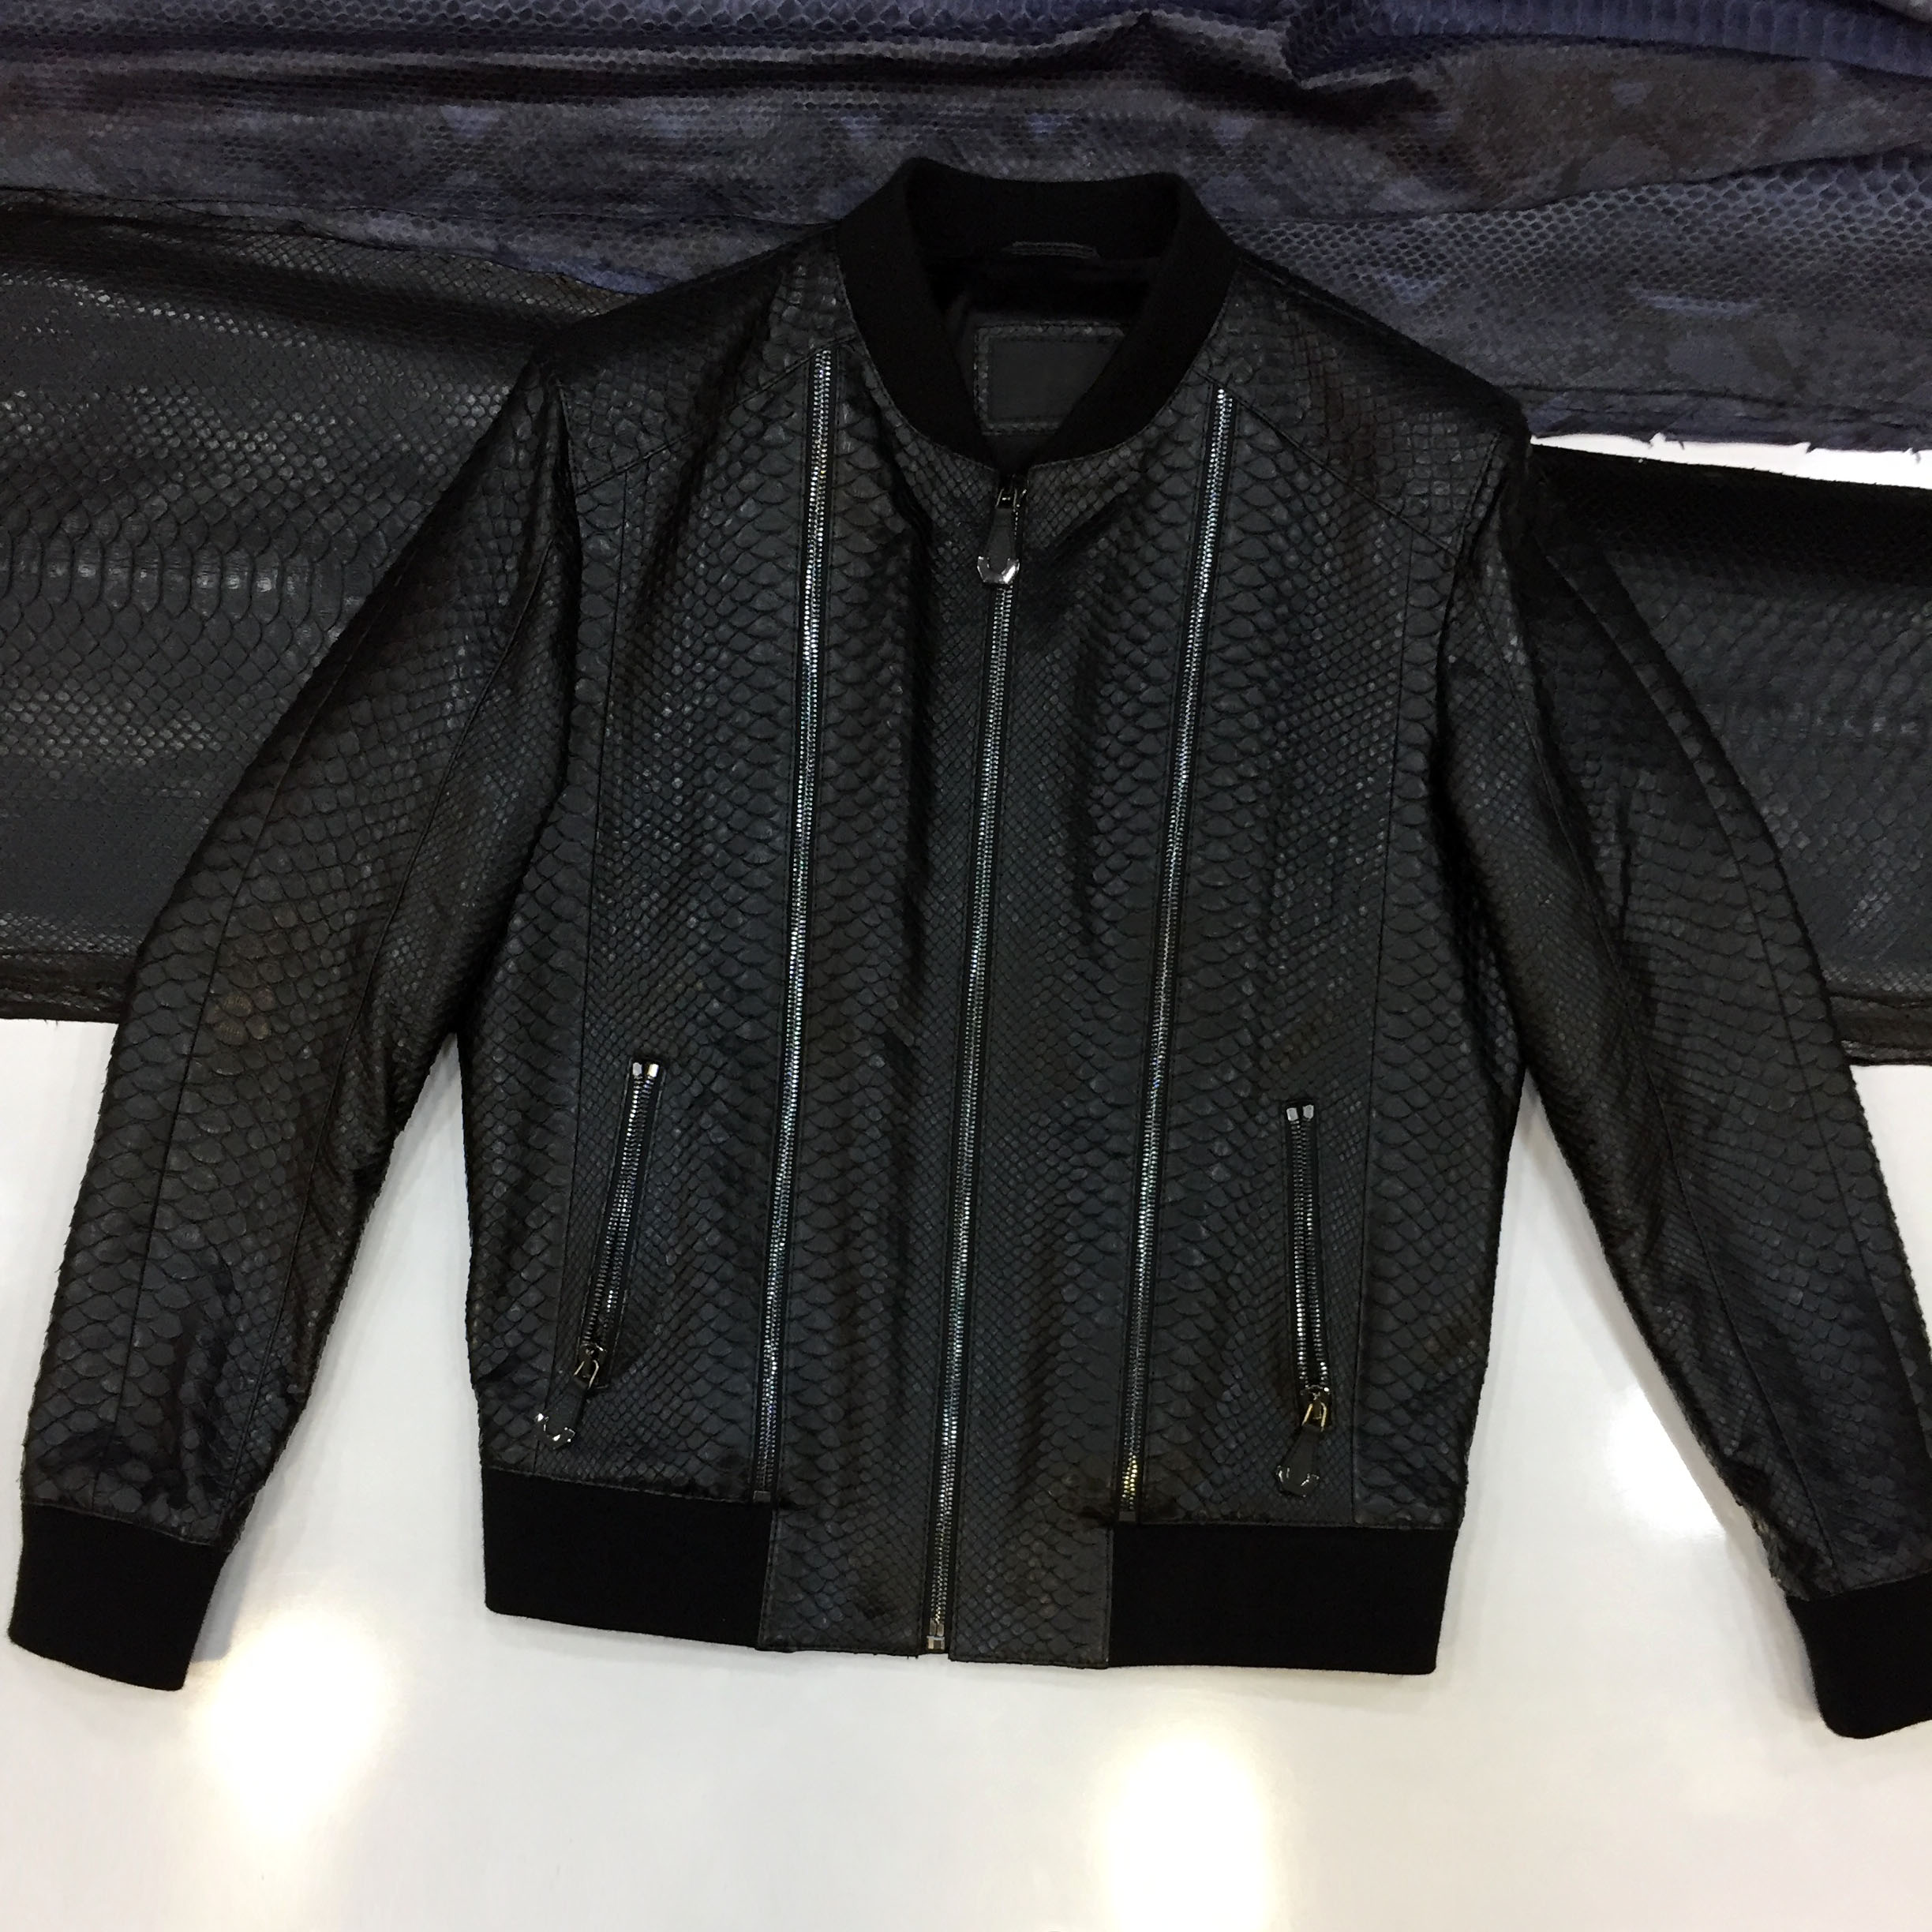 Mens Python Skin Jacket - Leather Guys: Luxury Leather jackets